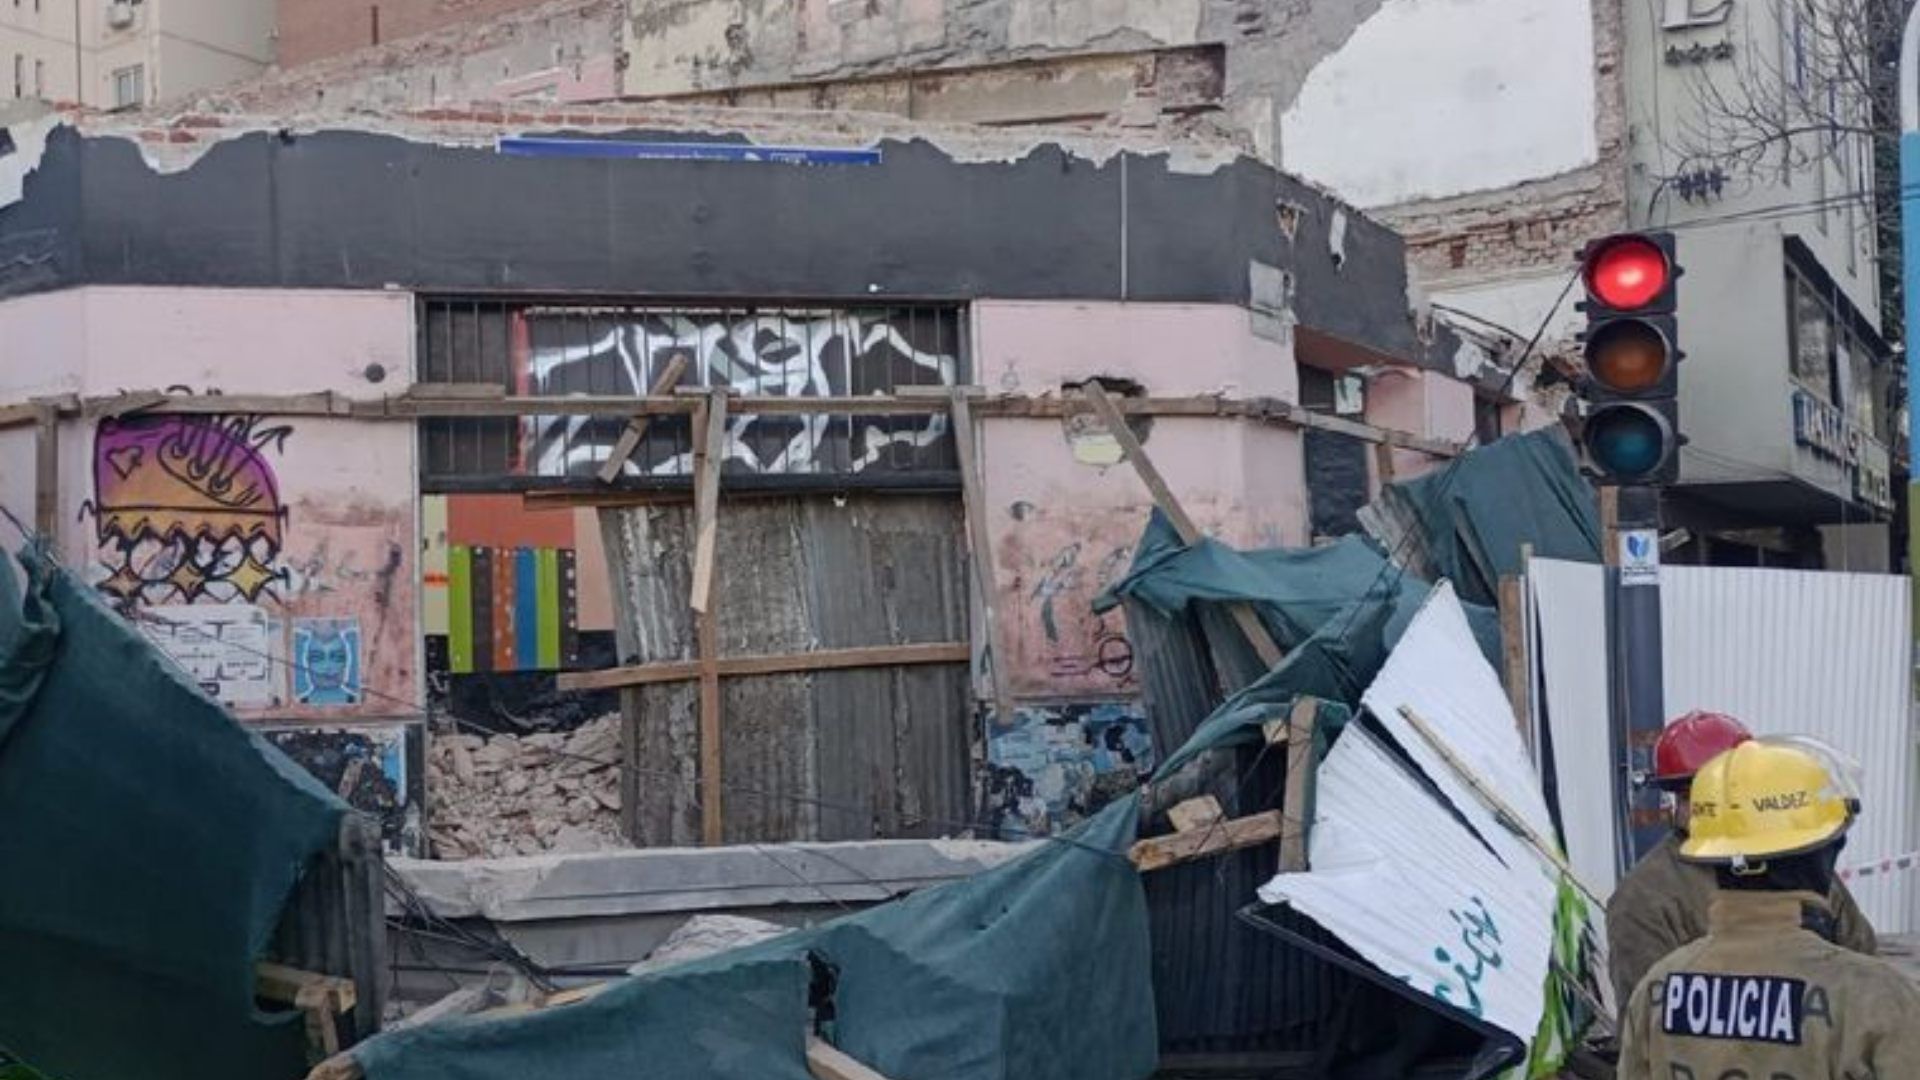 Video Momento Exacto Derrumbe Tucumán Argentina; Reportan Heridos Caída Edificio